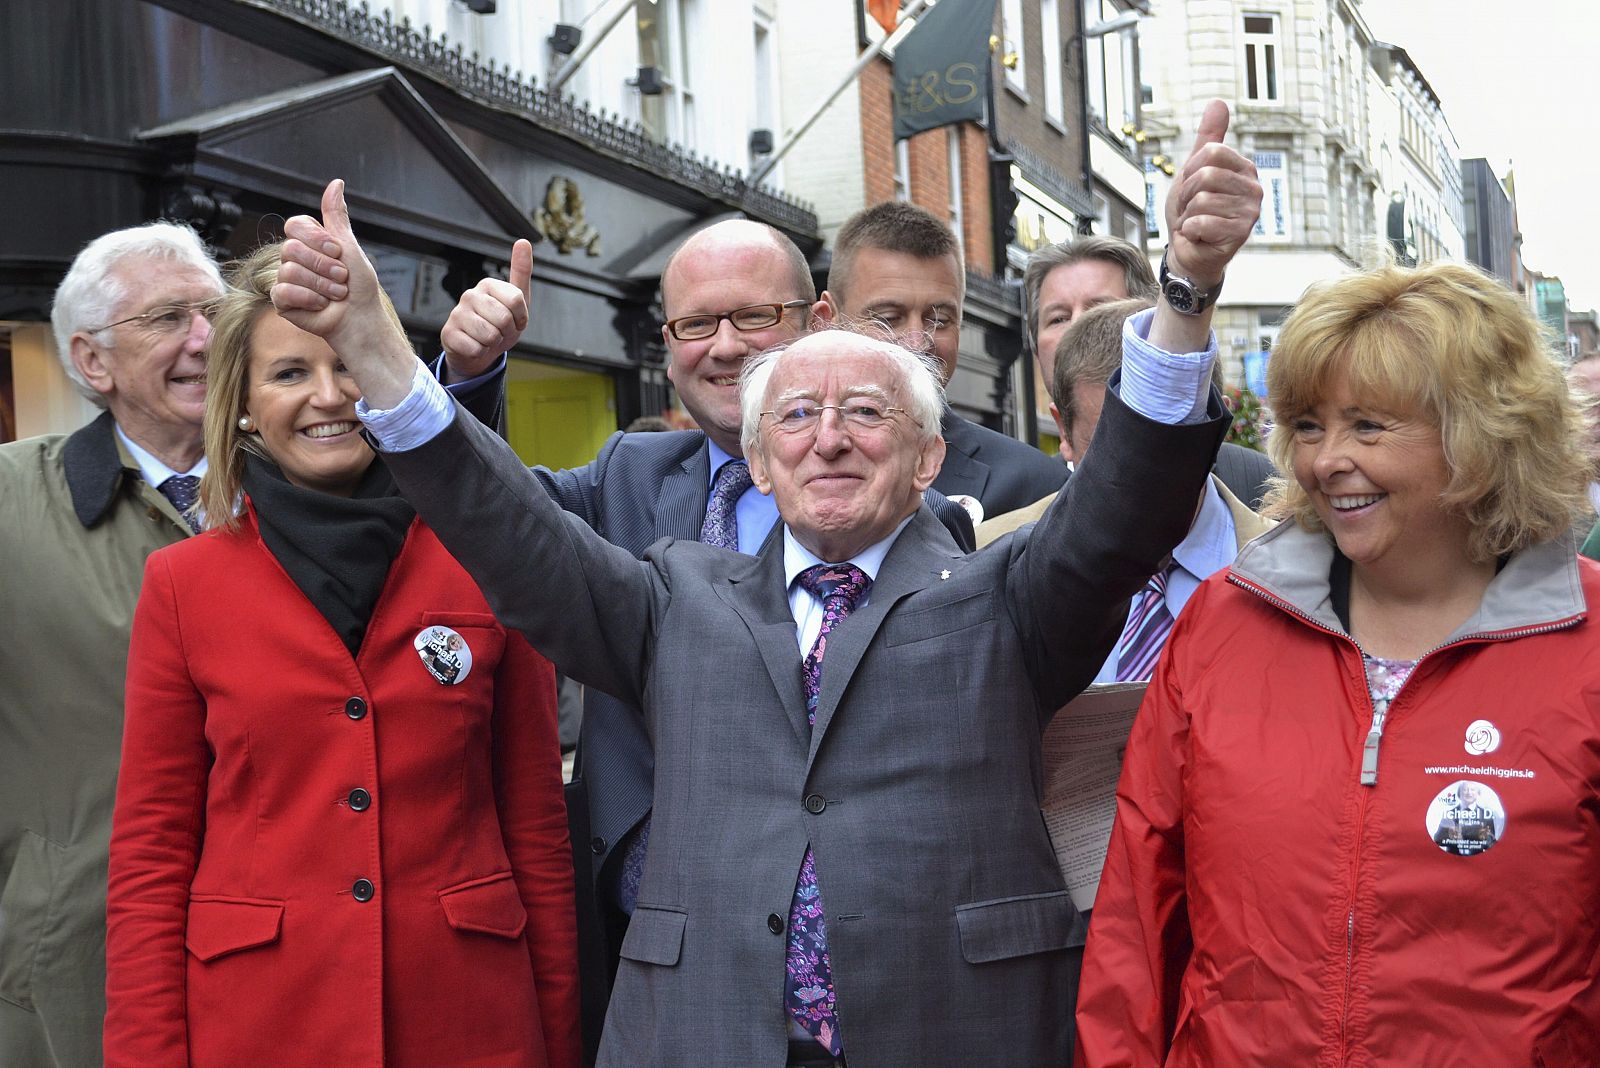 El candidato laborista a la presidencia de Irlanda, Michael D. Higgins (en el centro) durante un acto de campaña